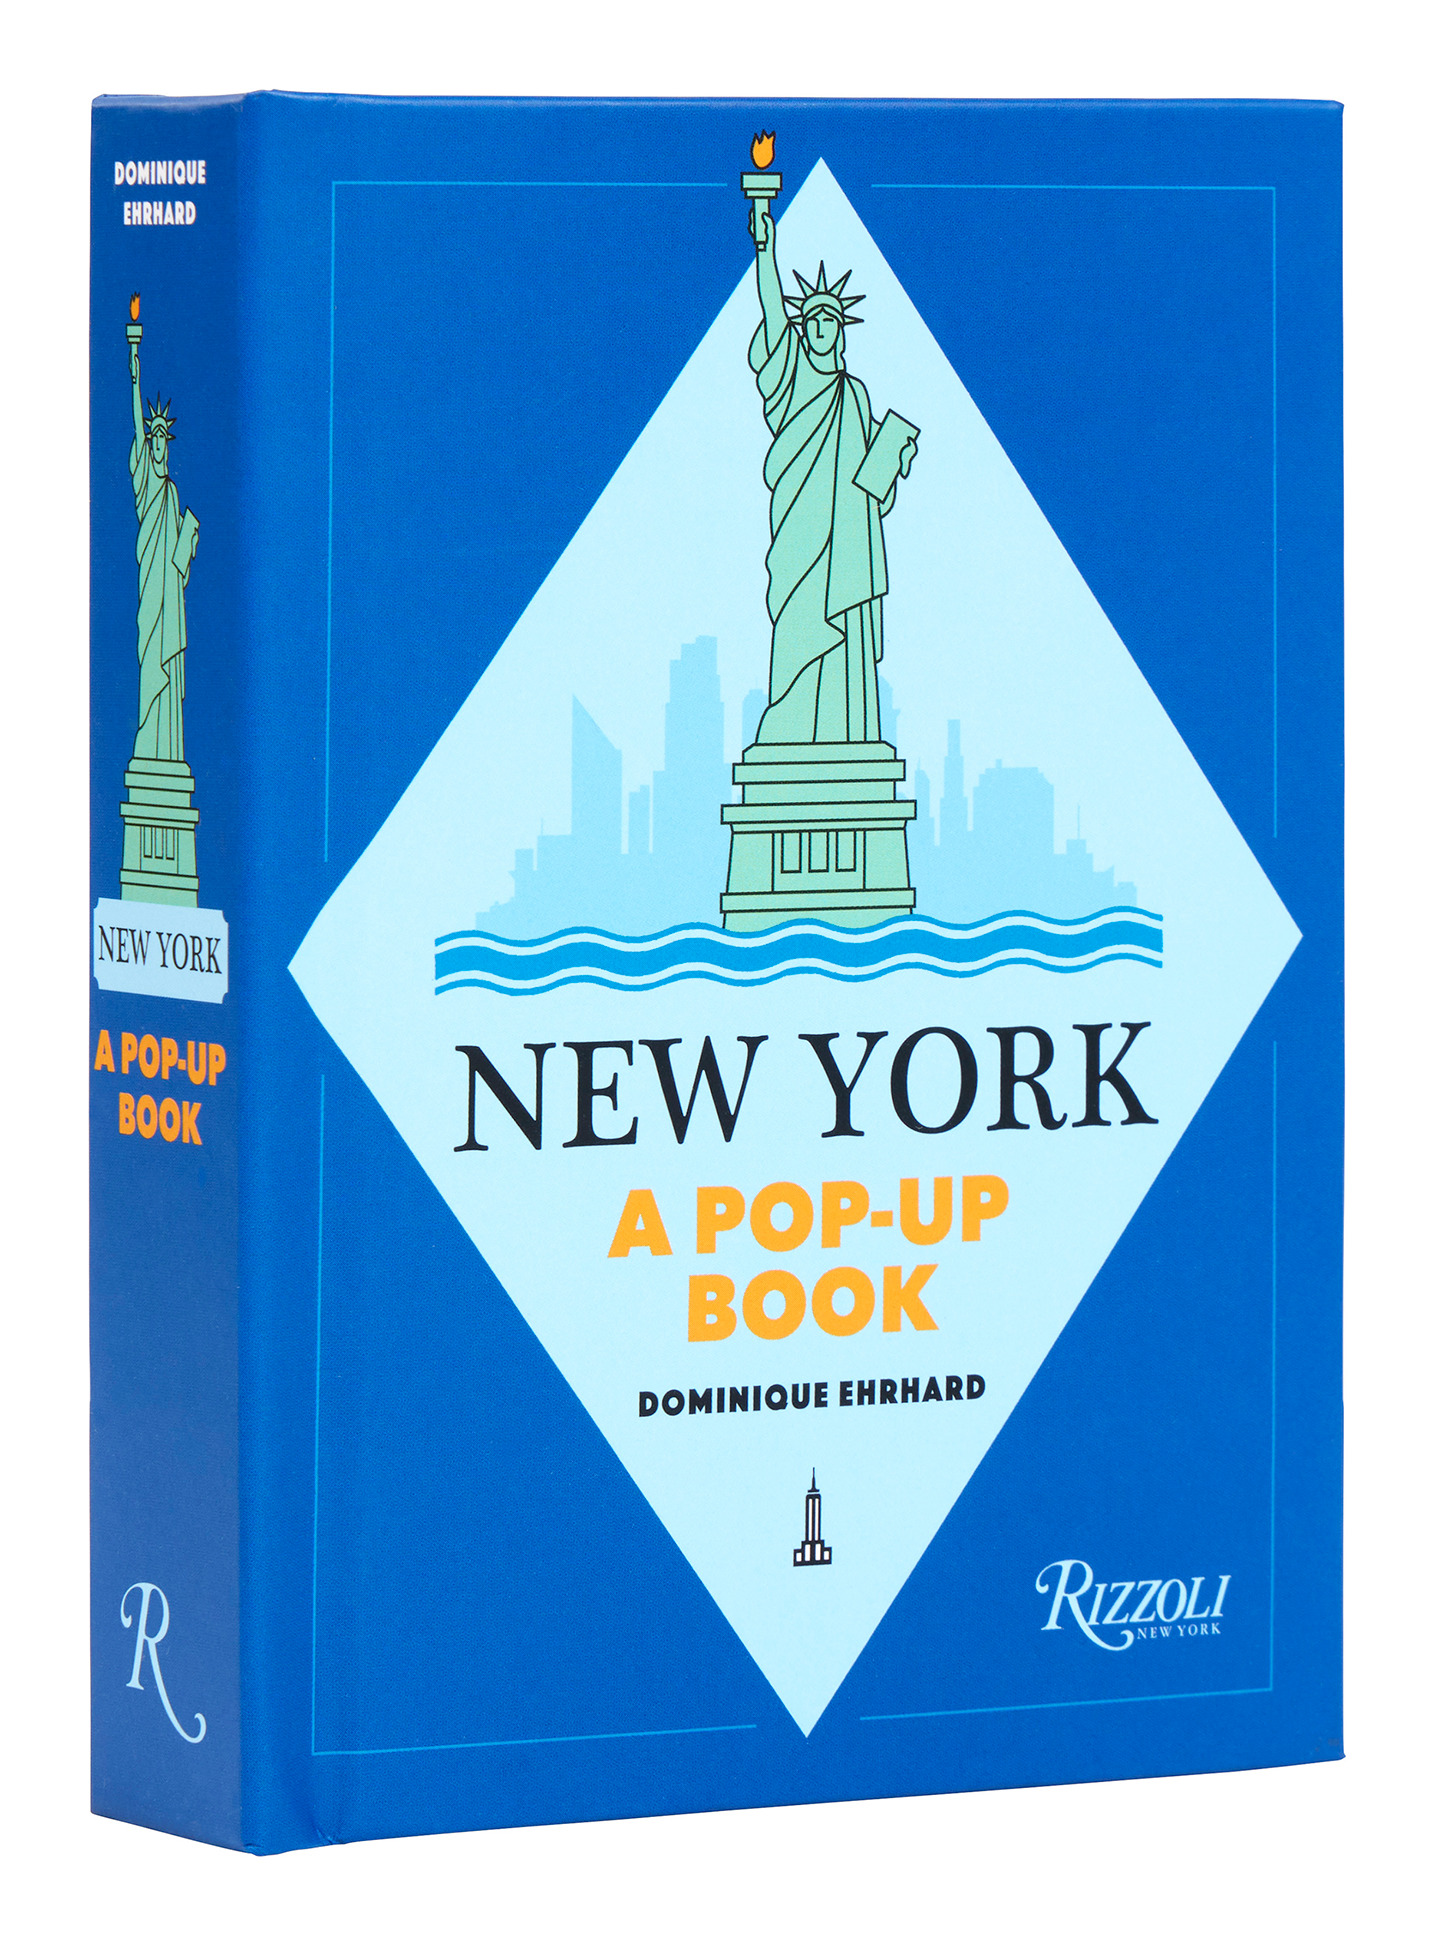 New York: A Pop-up Book